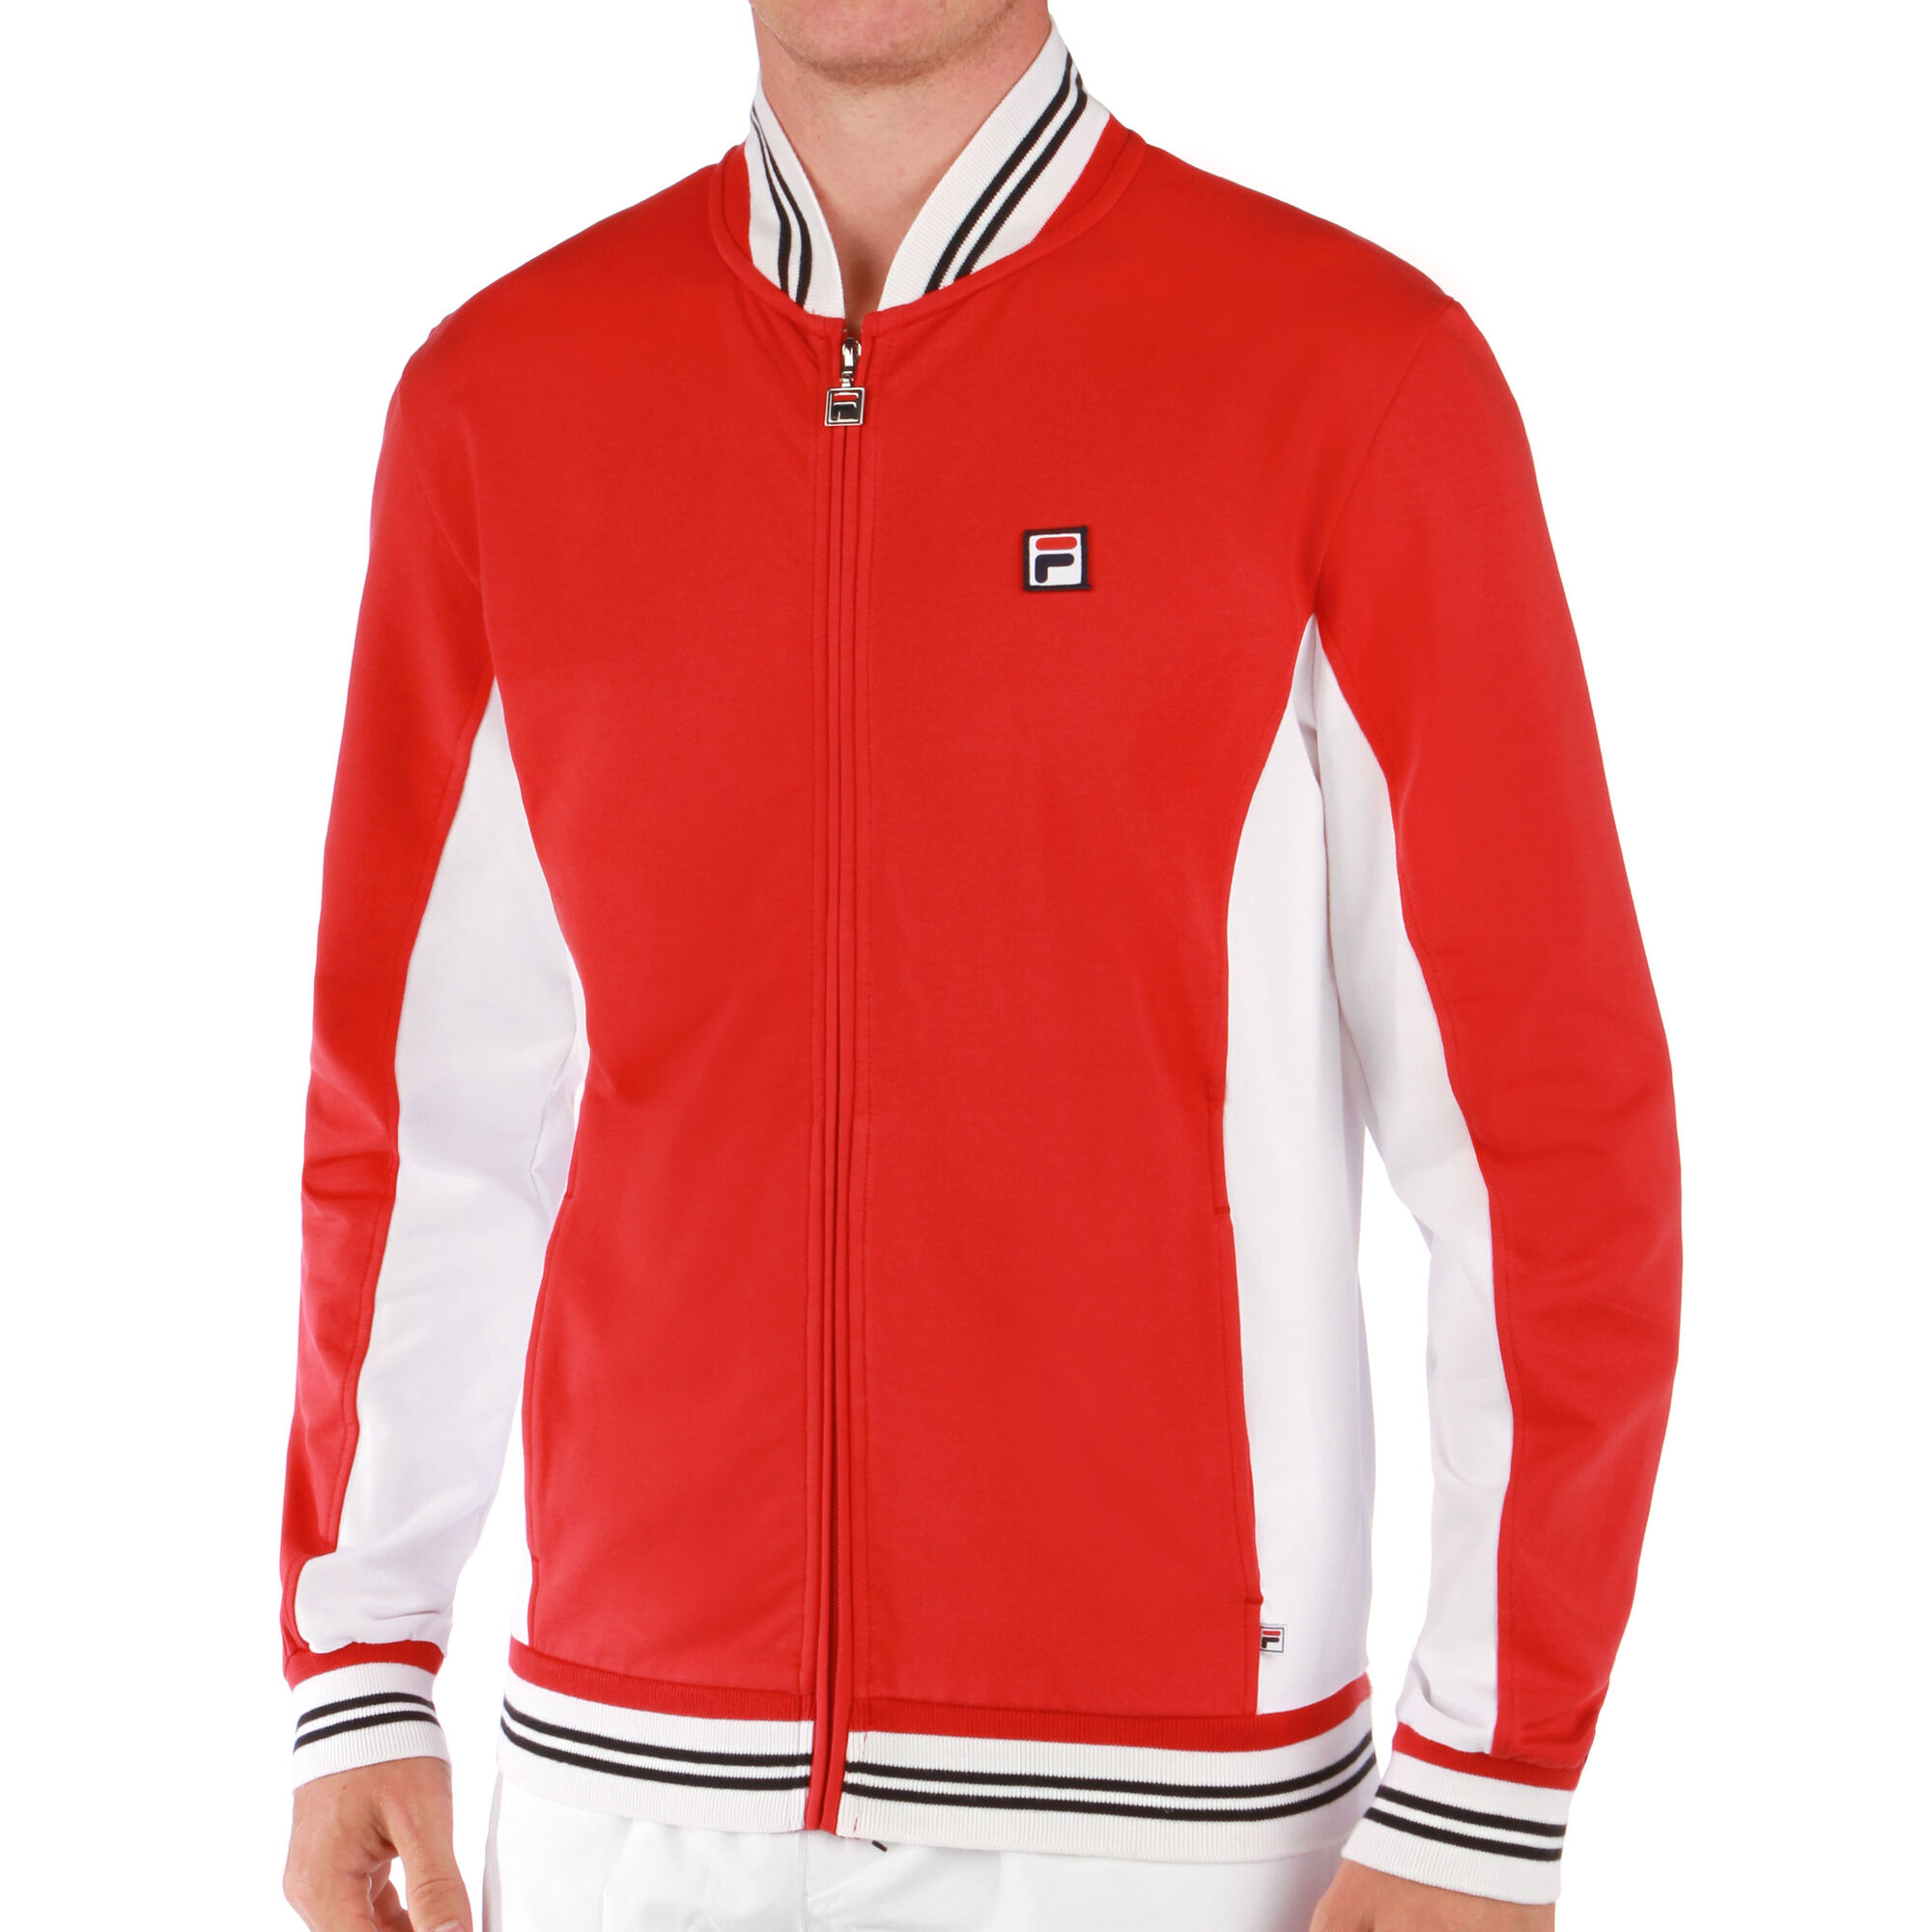 Fila Jacket Ole Training Jacket Men - Red, White online |